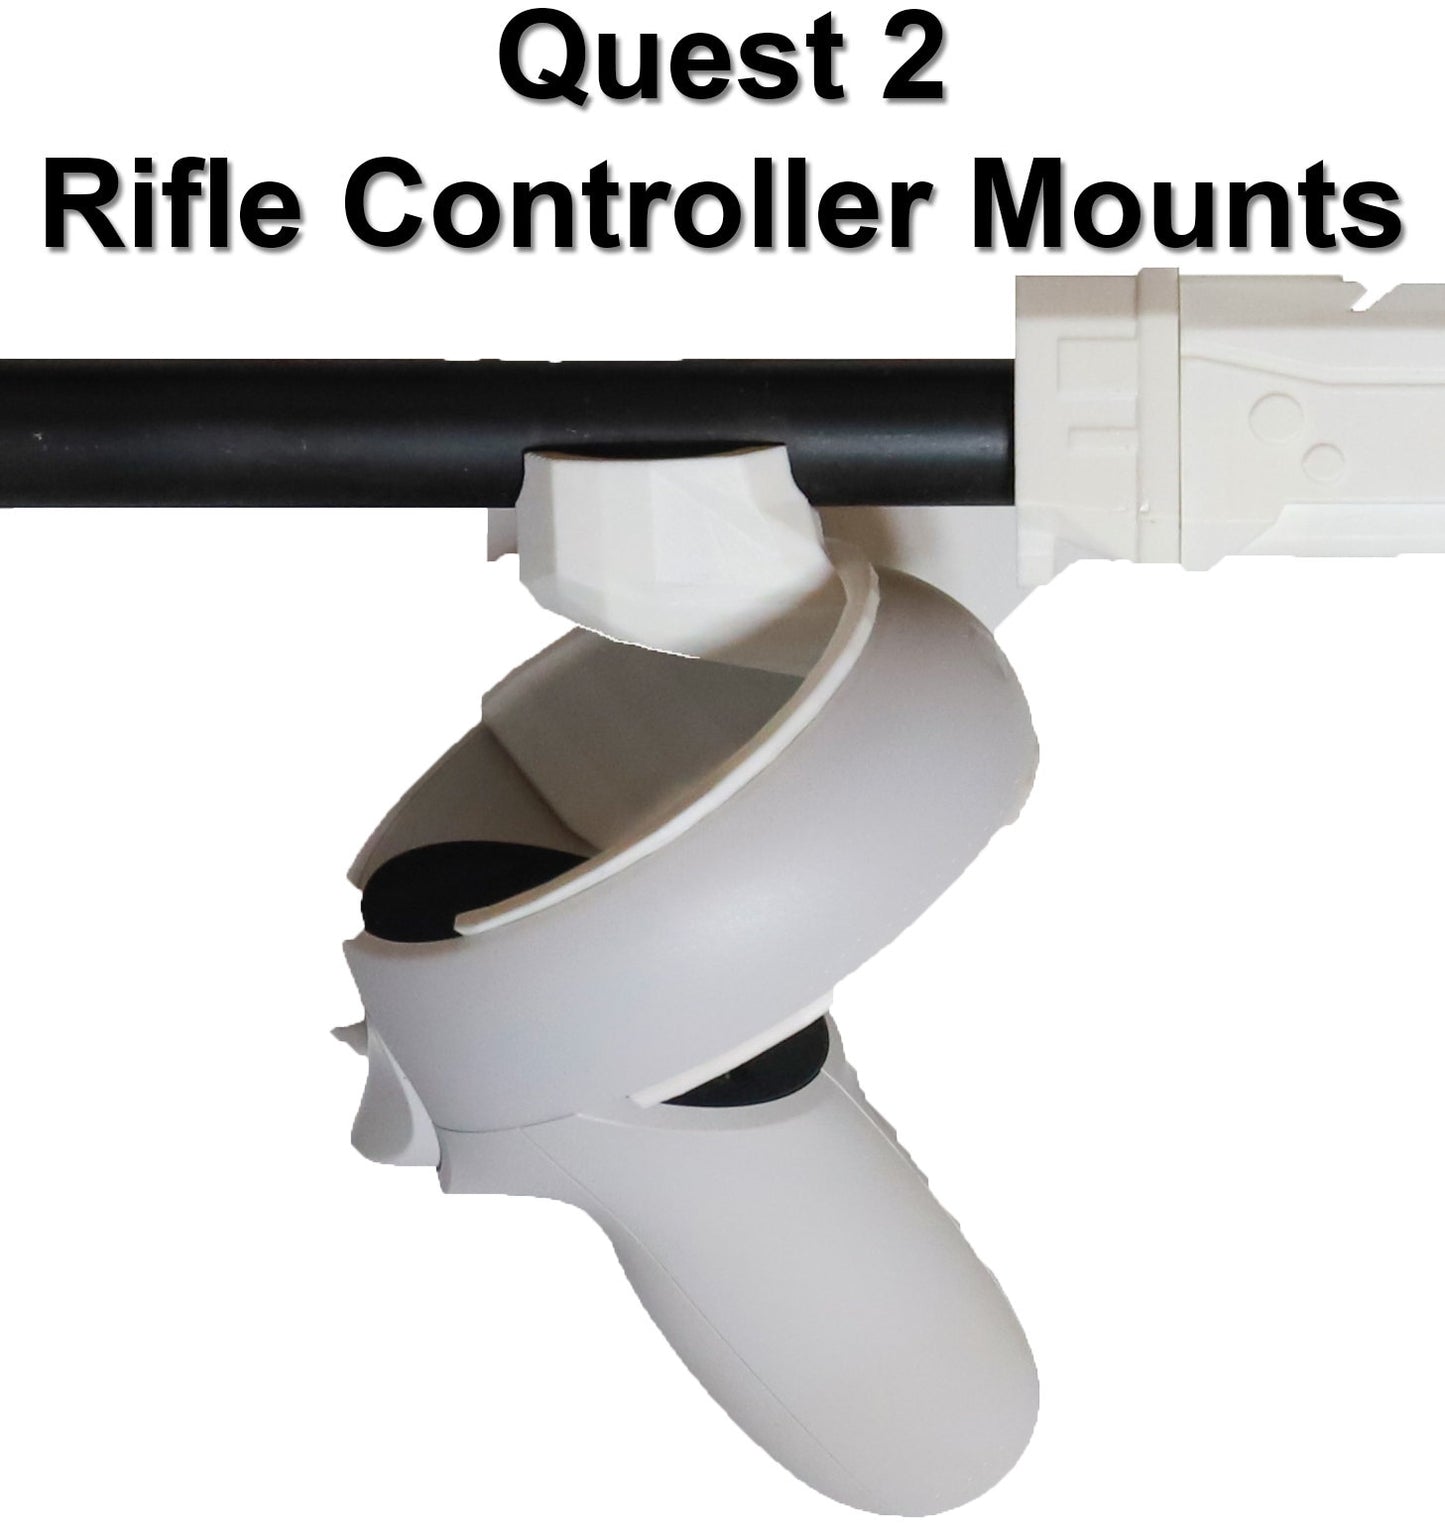 Soportes para controlador de rifle Meta Quest 1 o 2 (SÓLO soportes, culata de rifle no incluida).